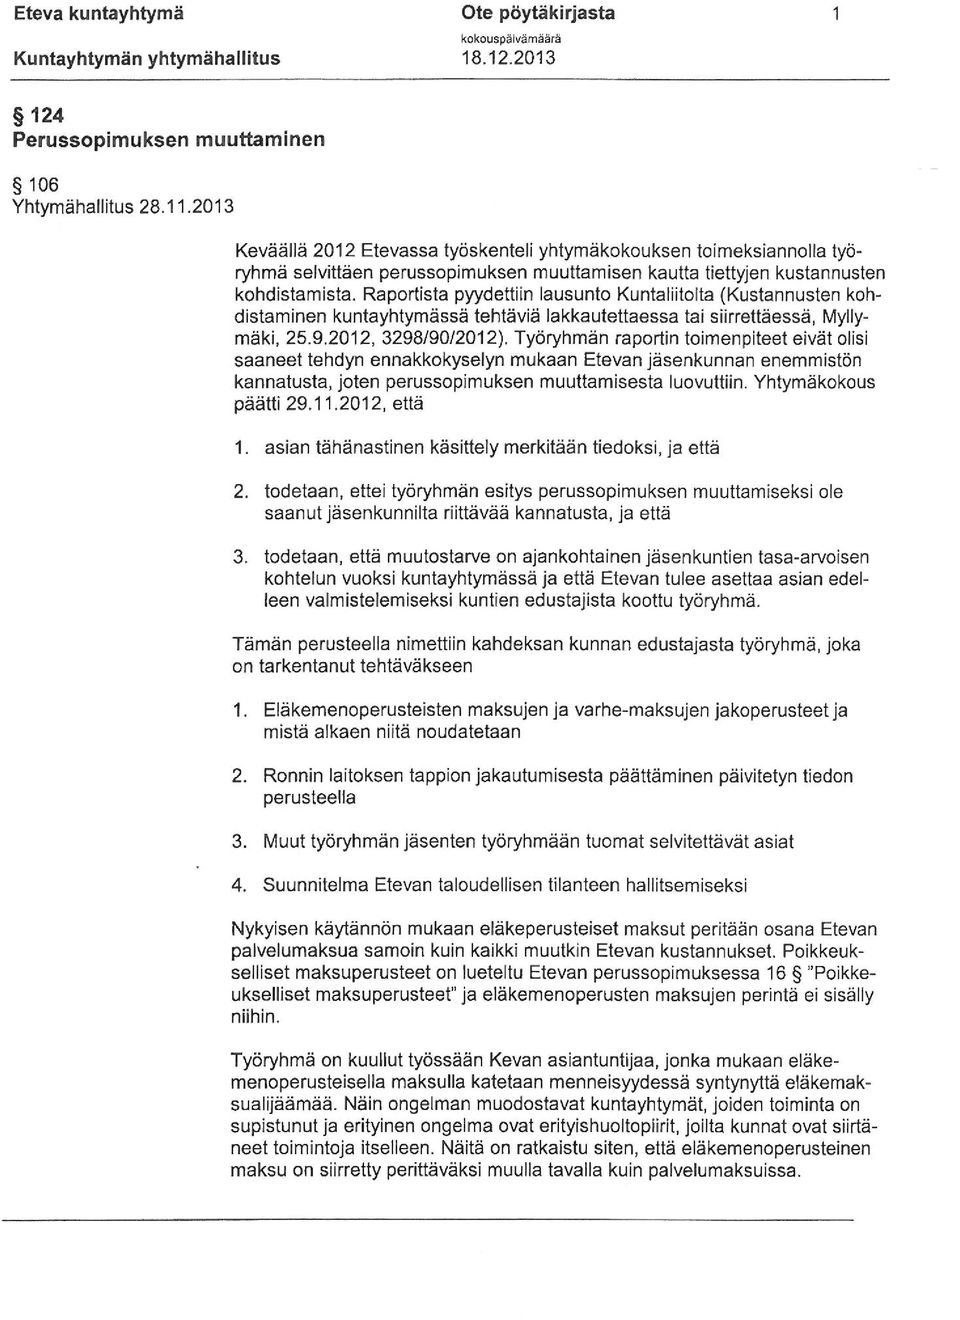 Raportista pyydettiin lausunto Kuntaliitolta (Kustannusten kohdistaminen kuntayhtymässä tehtäviä lakkautettaessa tai siirrettäessä, Myllymäki, 25.9.2012, 3298/90/2012).